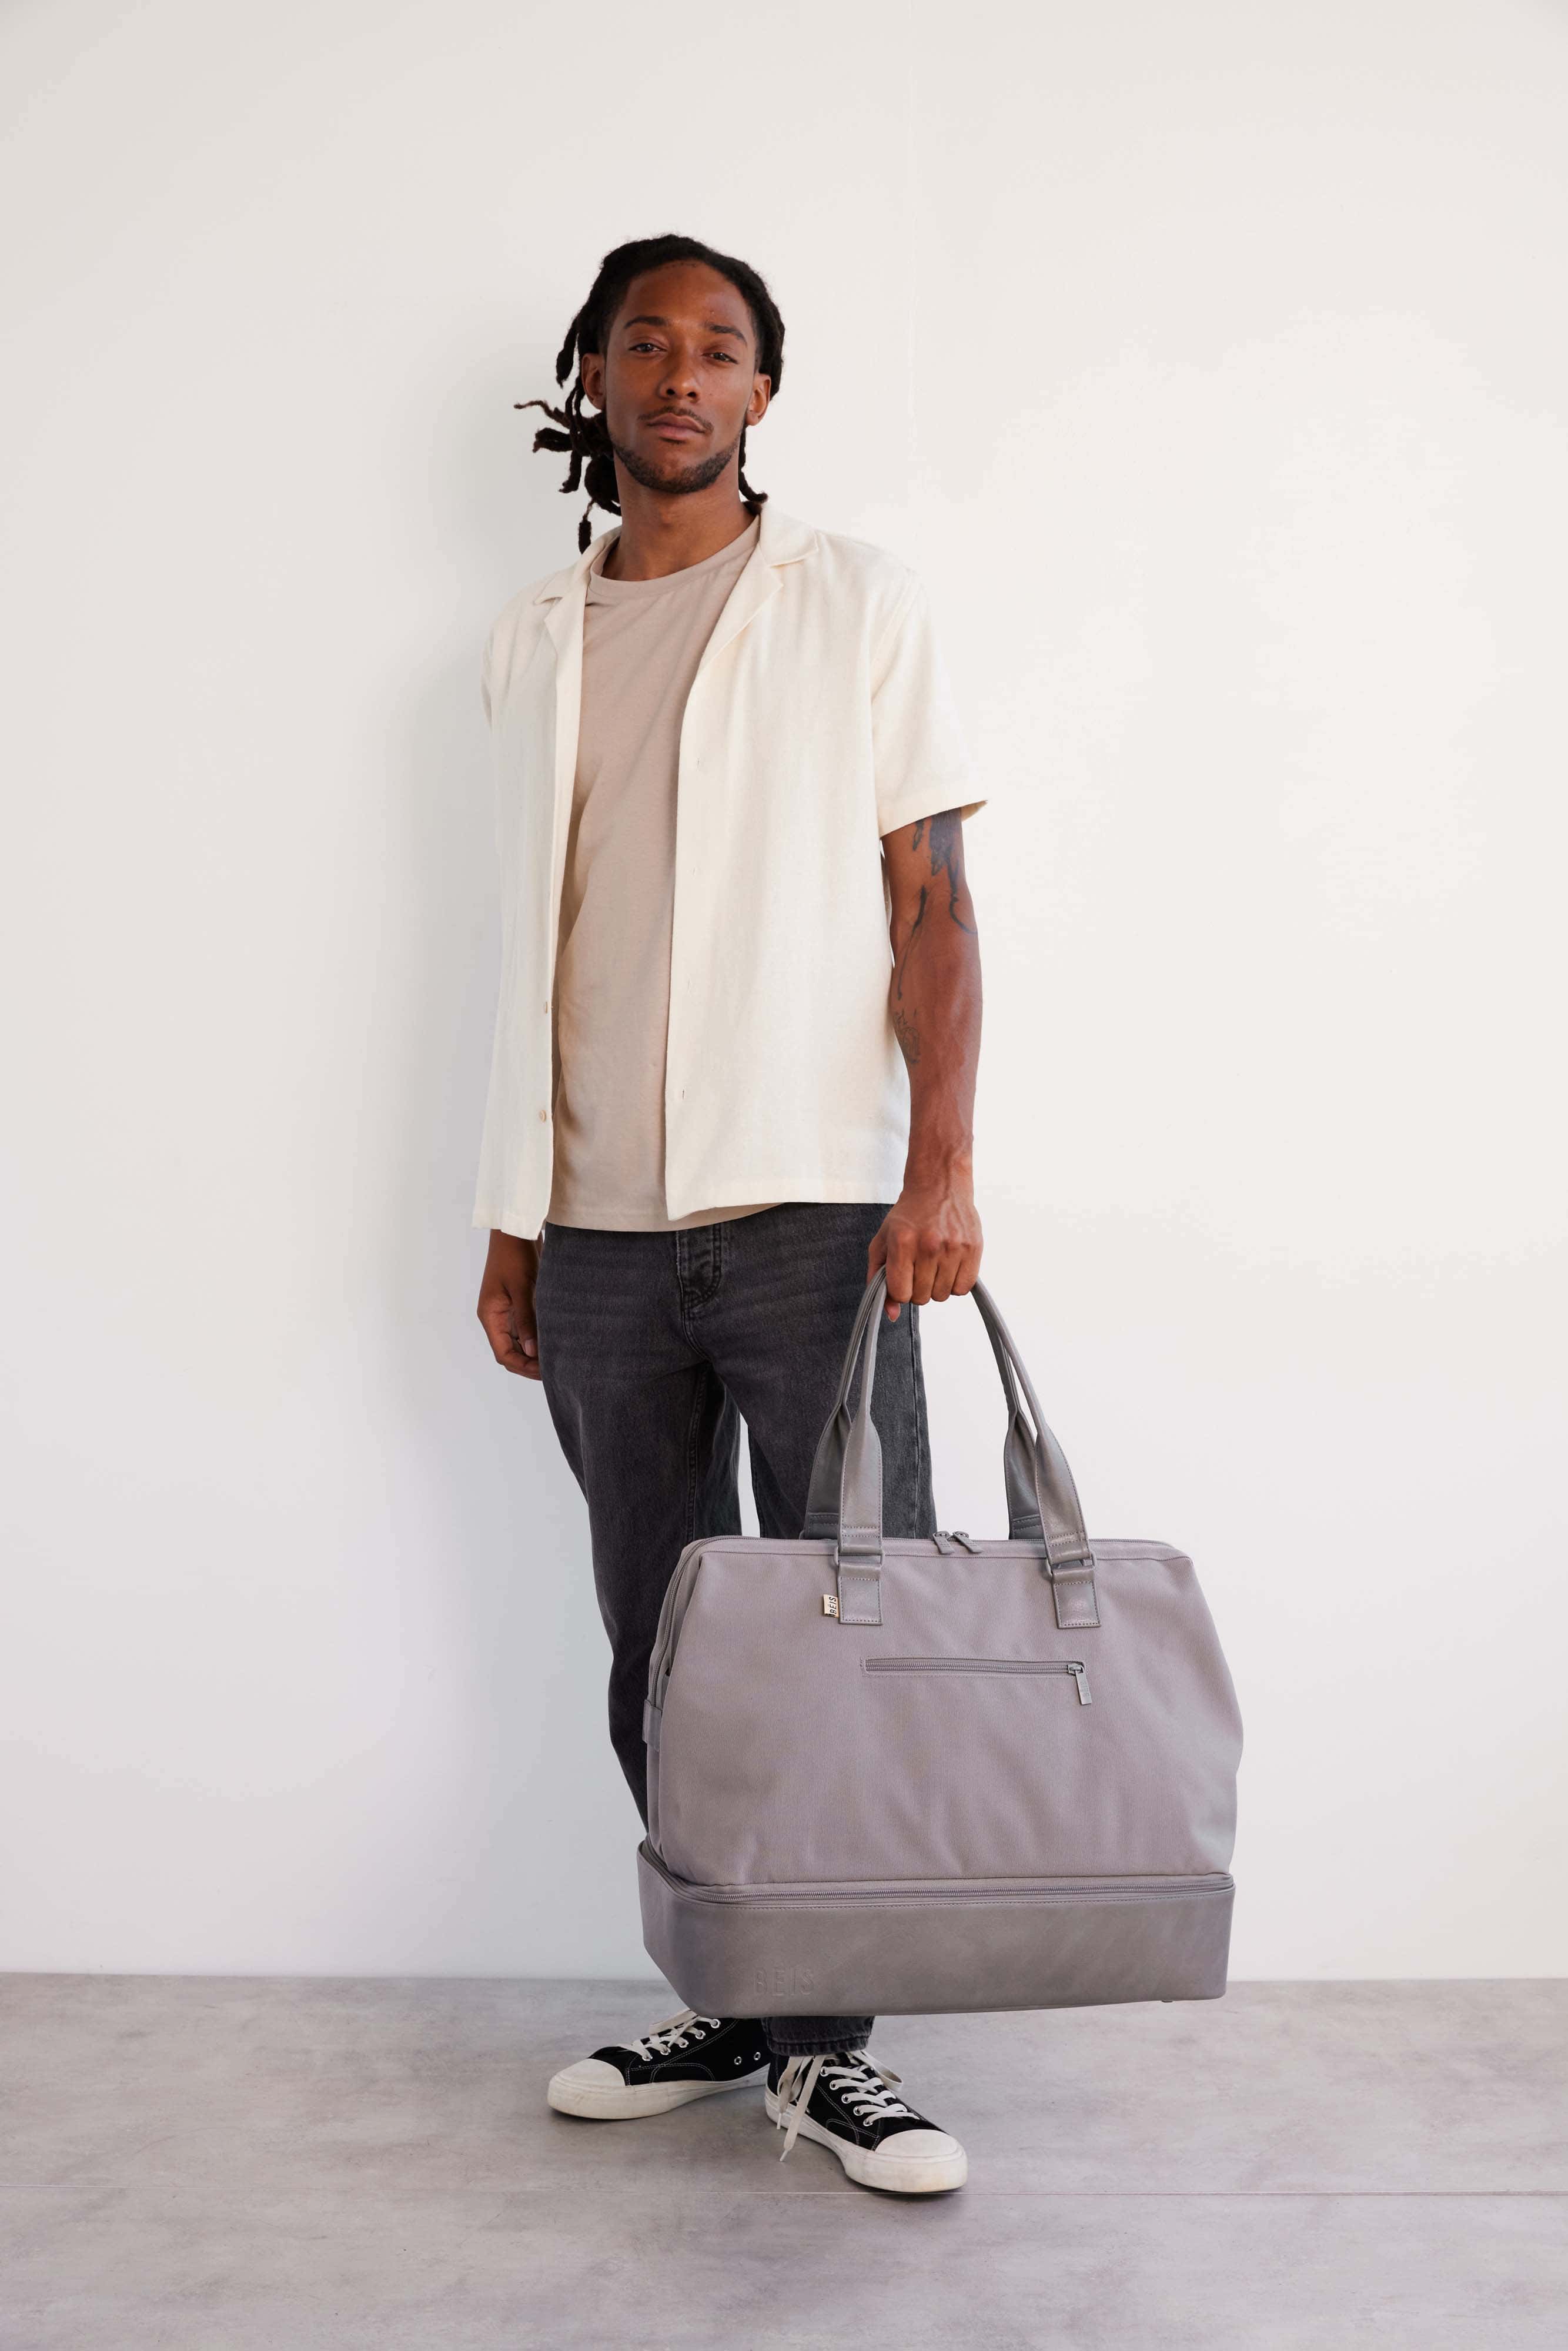 Béis 'The Weekender' in Grey - Grey Travel Bag & Duffle Bag